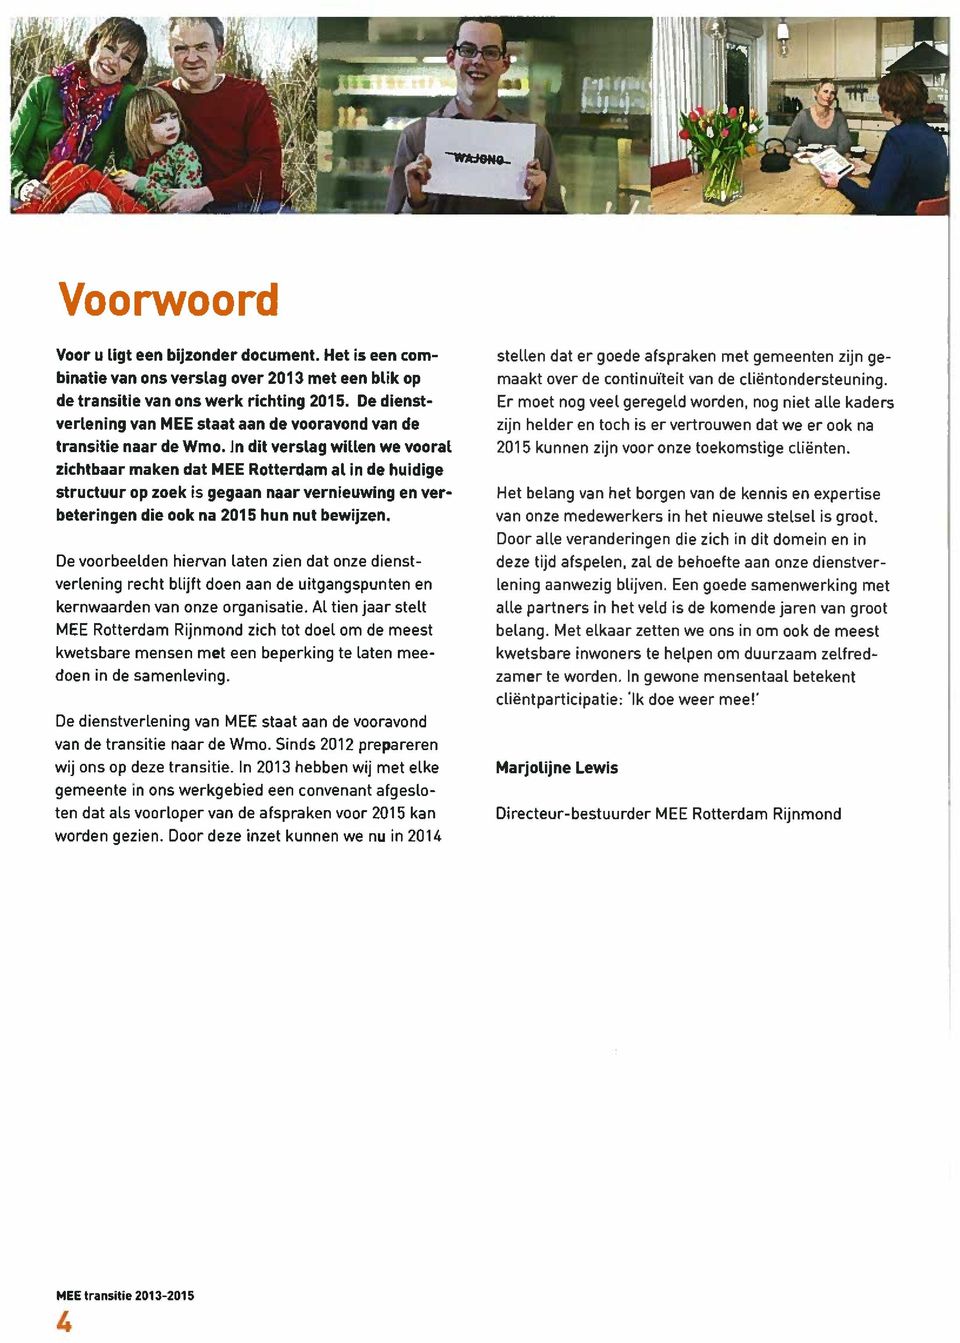 In di verslag willen we vooral zichbaar maken da MEE Roerdam al in de huidige srucuur op zoek is gegaan naar vernieuwing en ver beeringen die ook na 215 hun nu bewijzen.